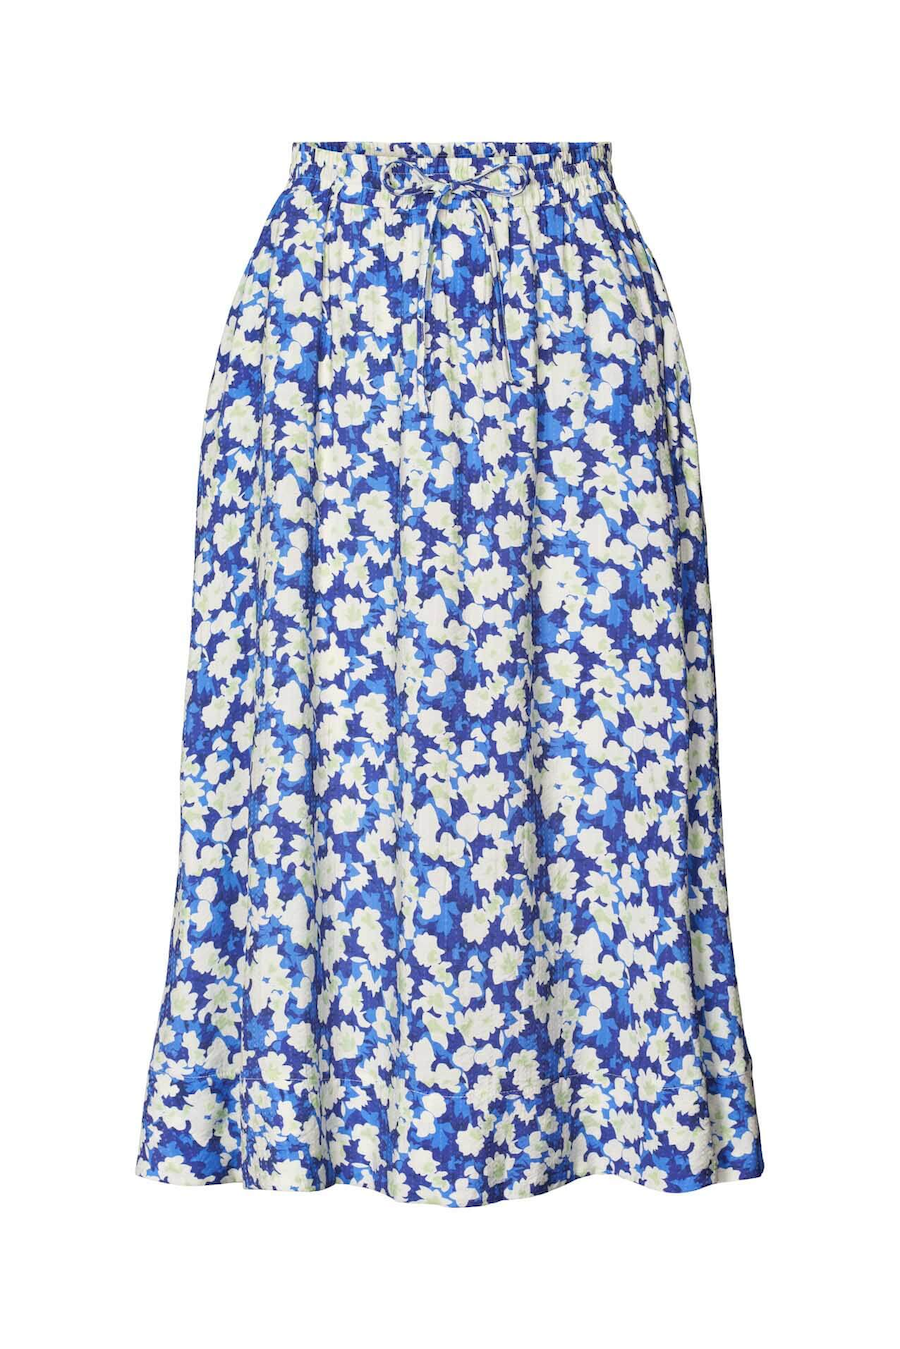 Lollys Laundry Morning Skirt - Blue Floral